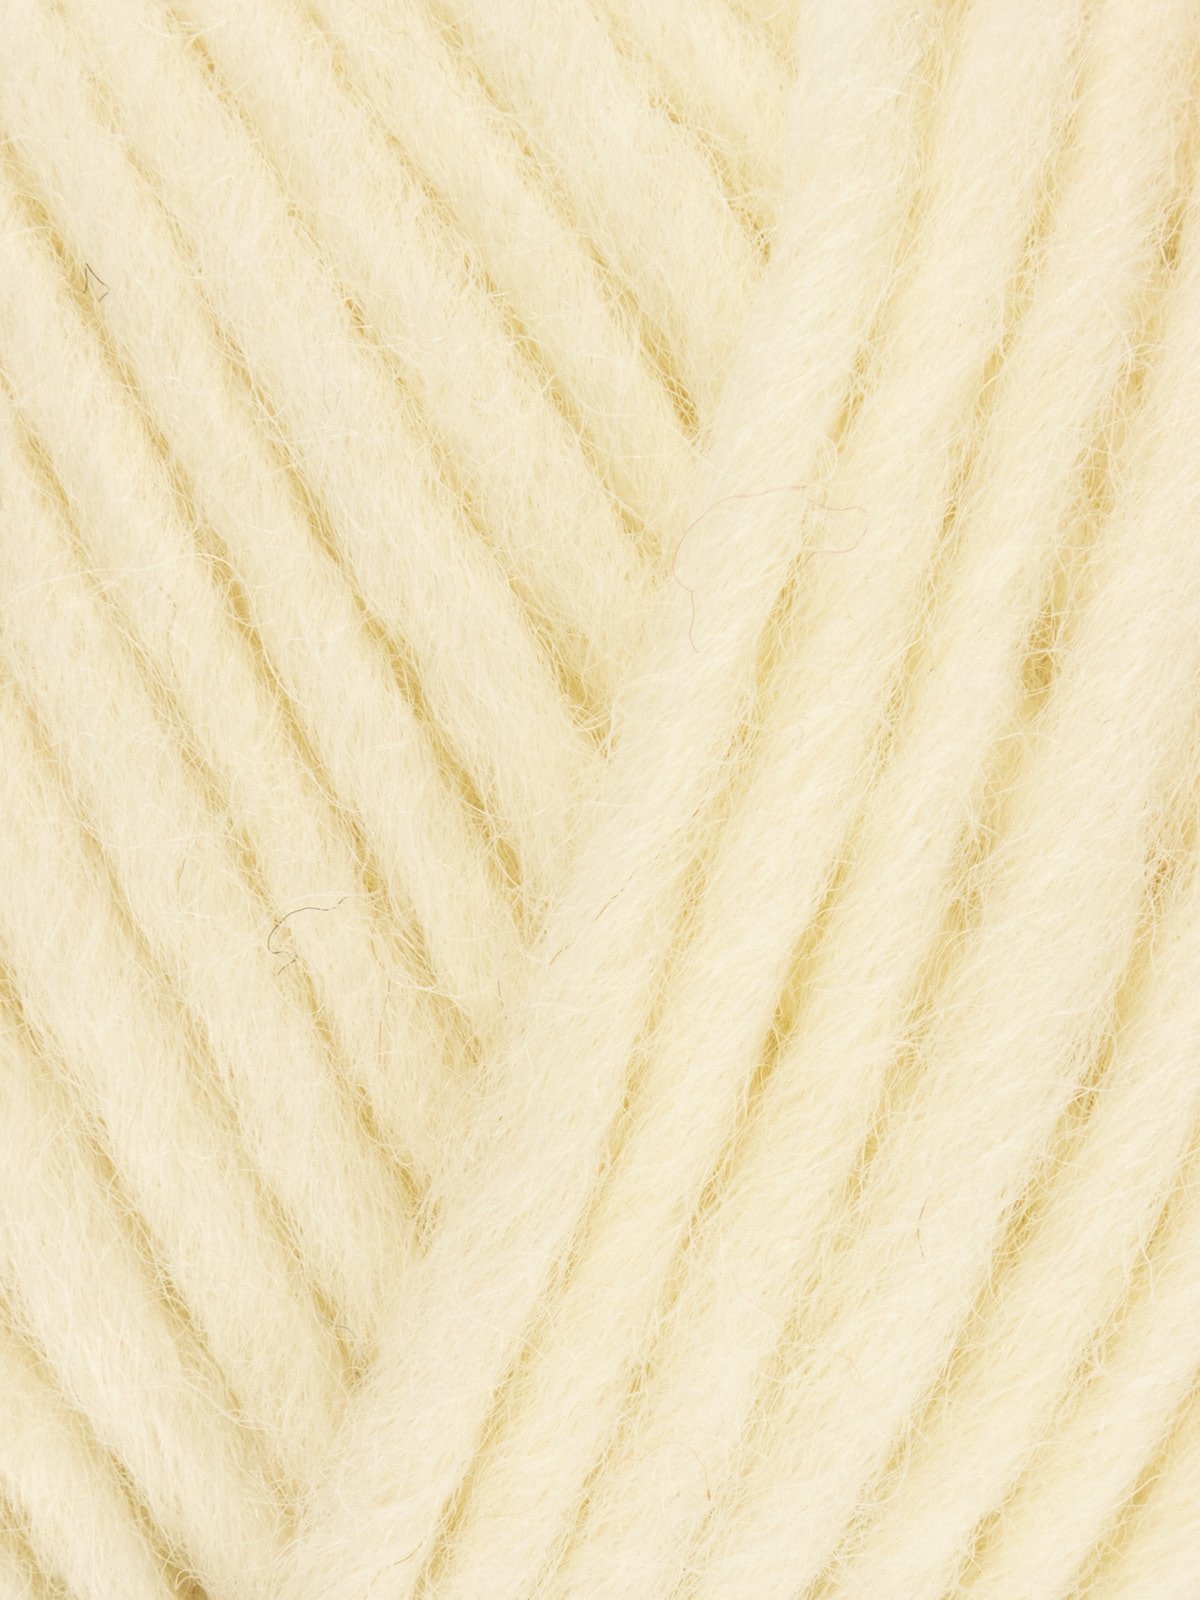 Mittens Knitting Kit